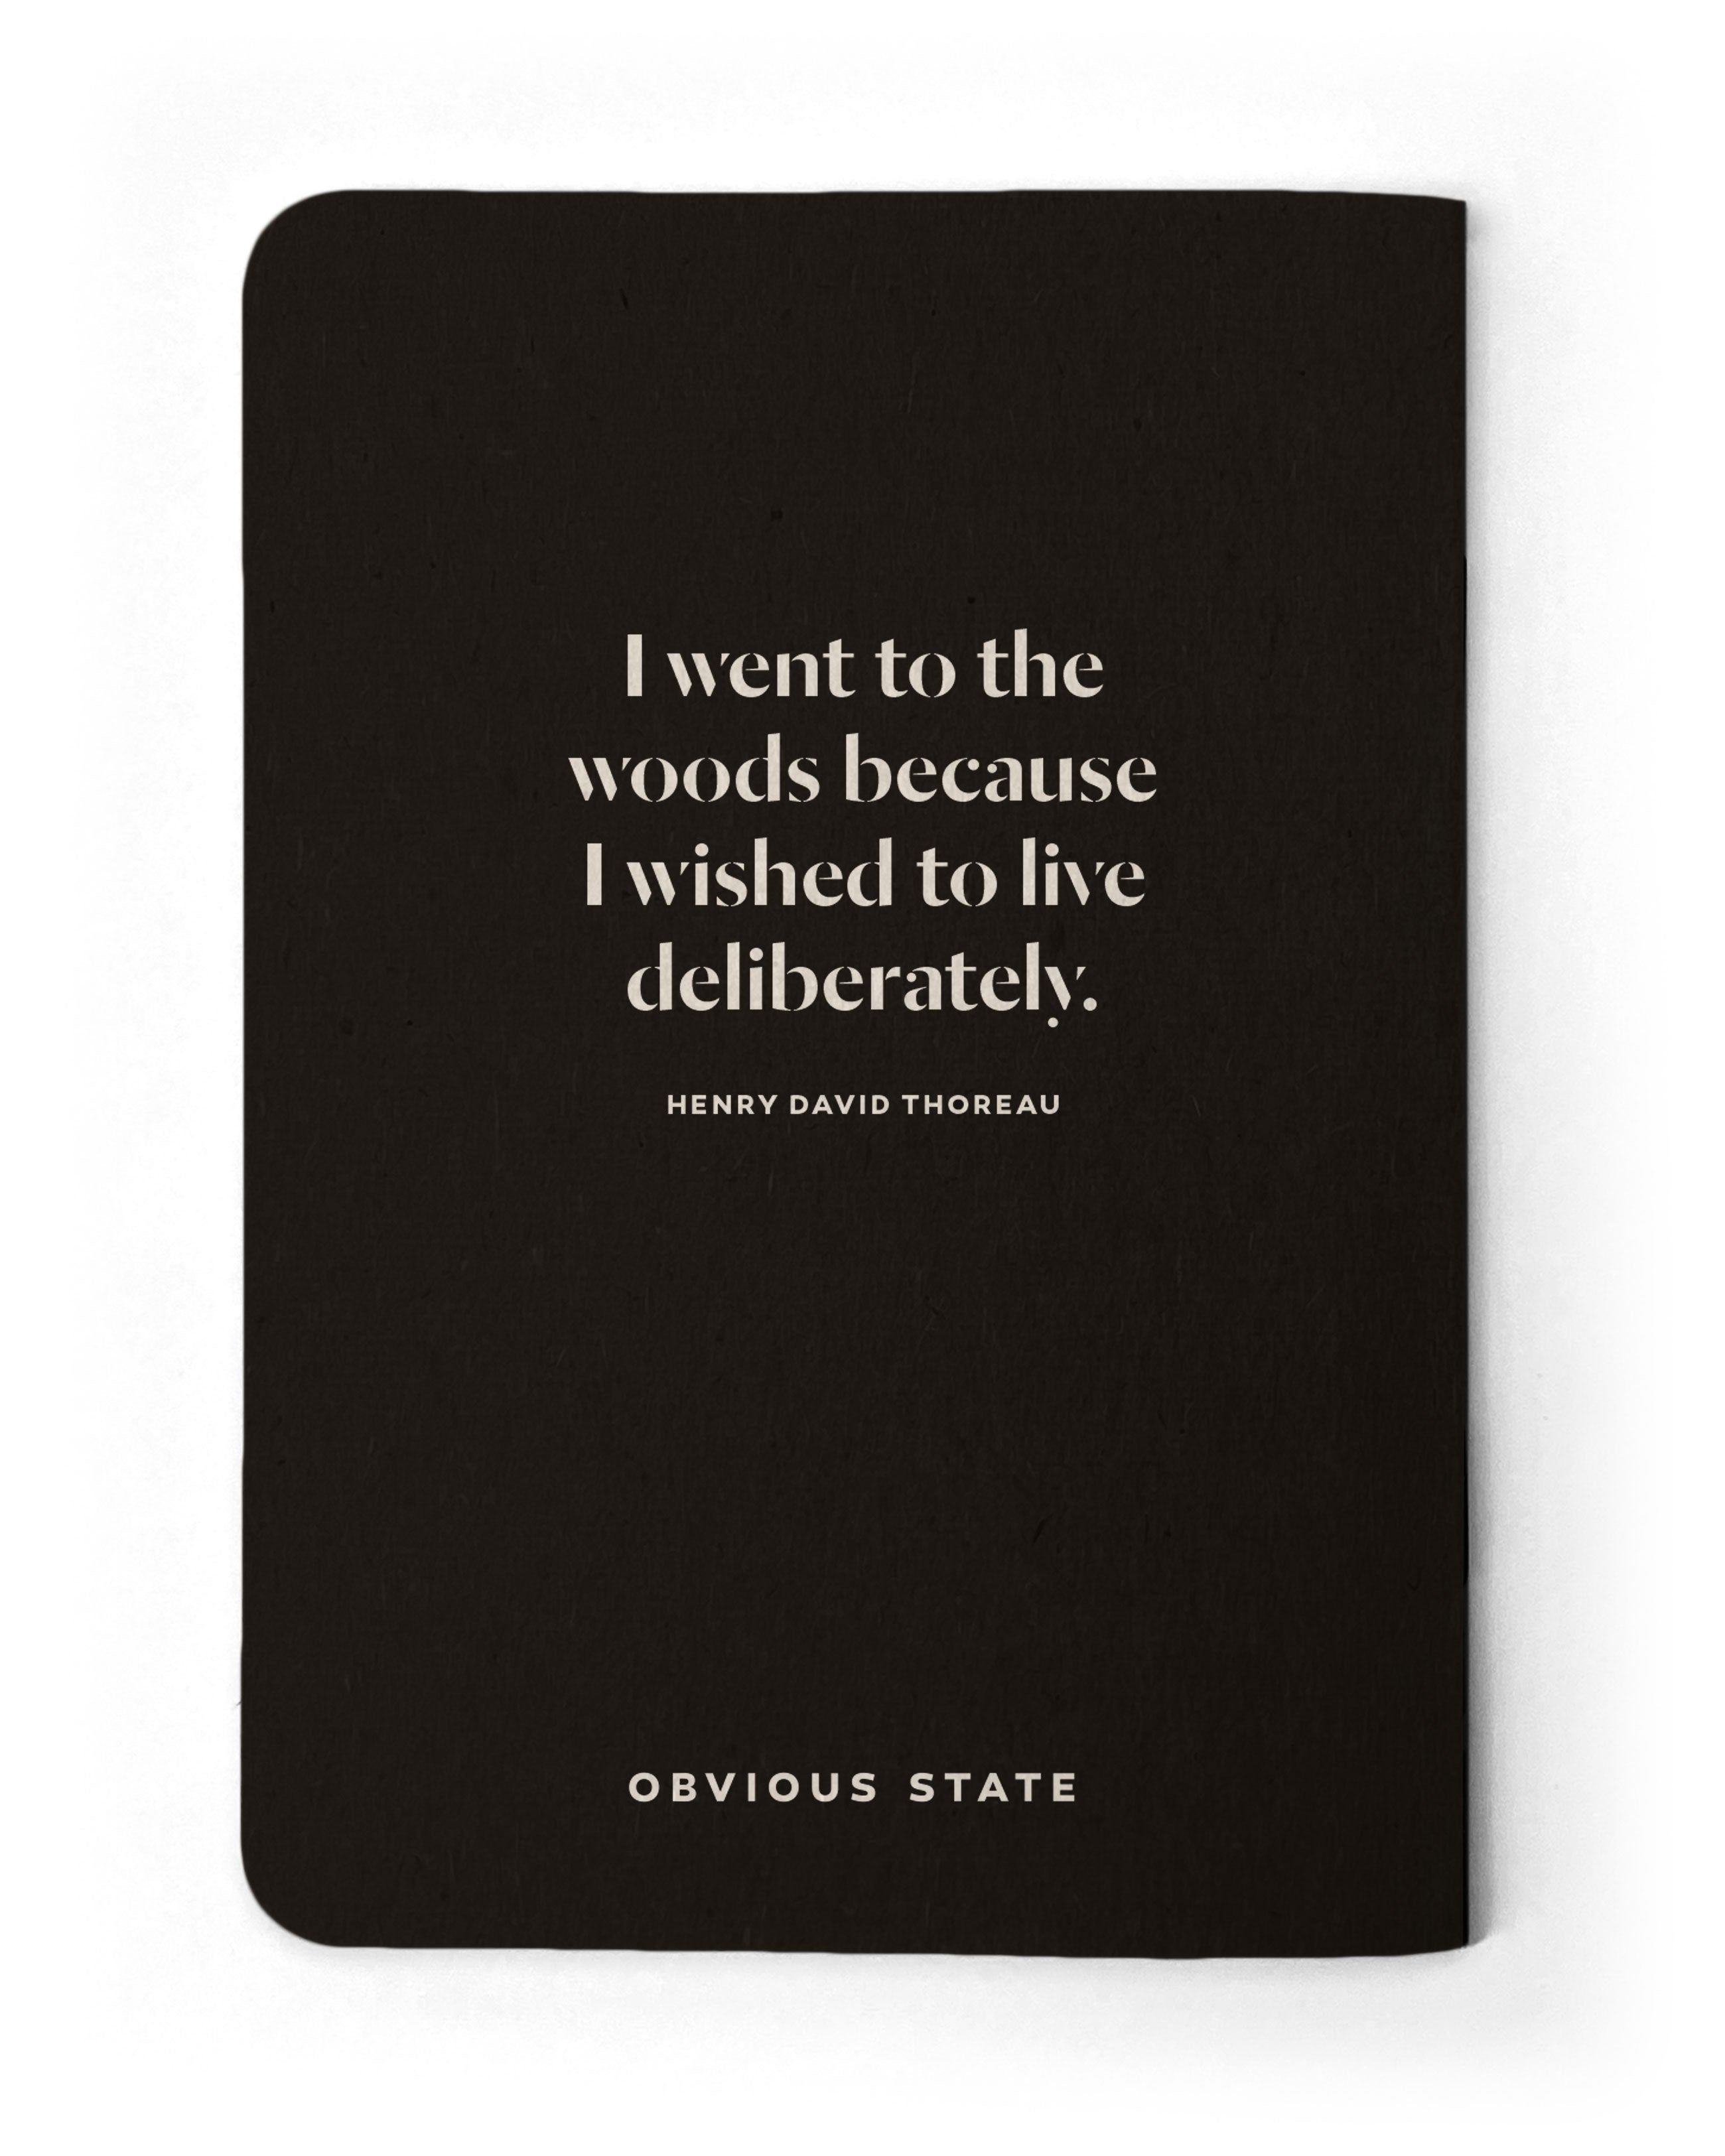 Thoreau Notebook